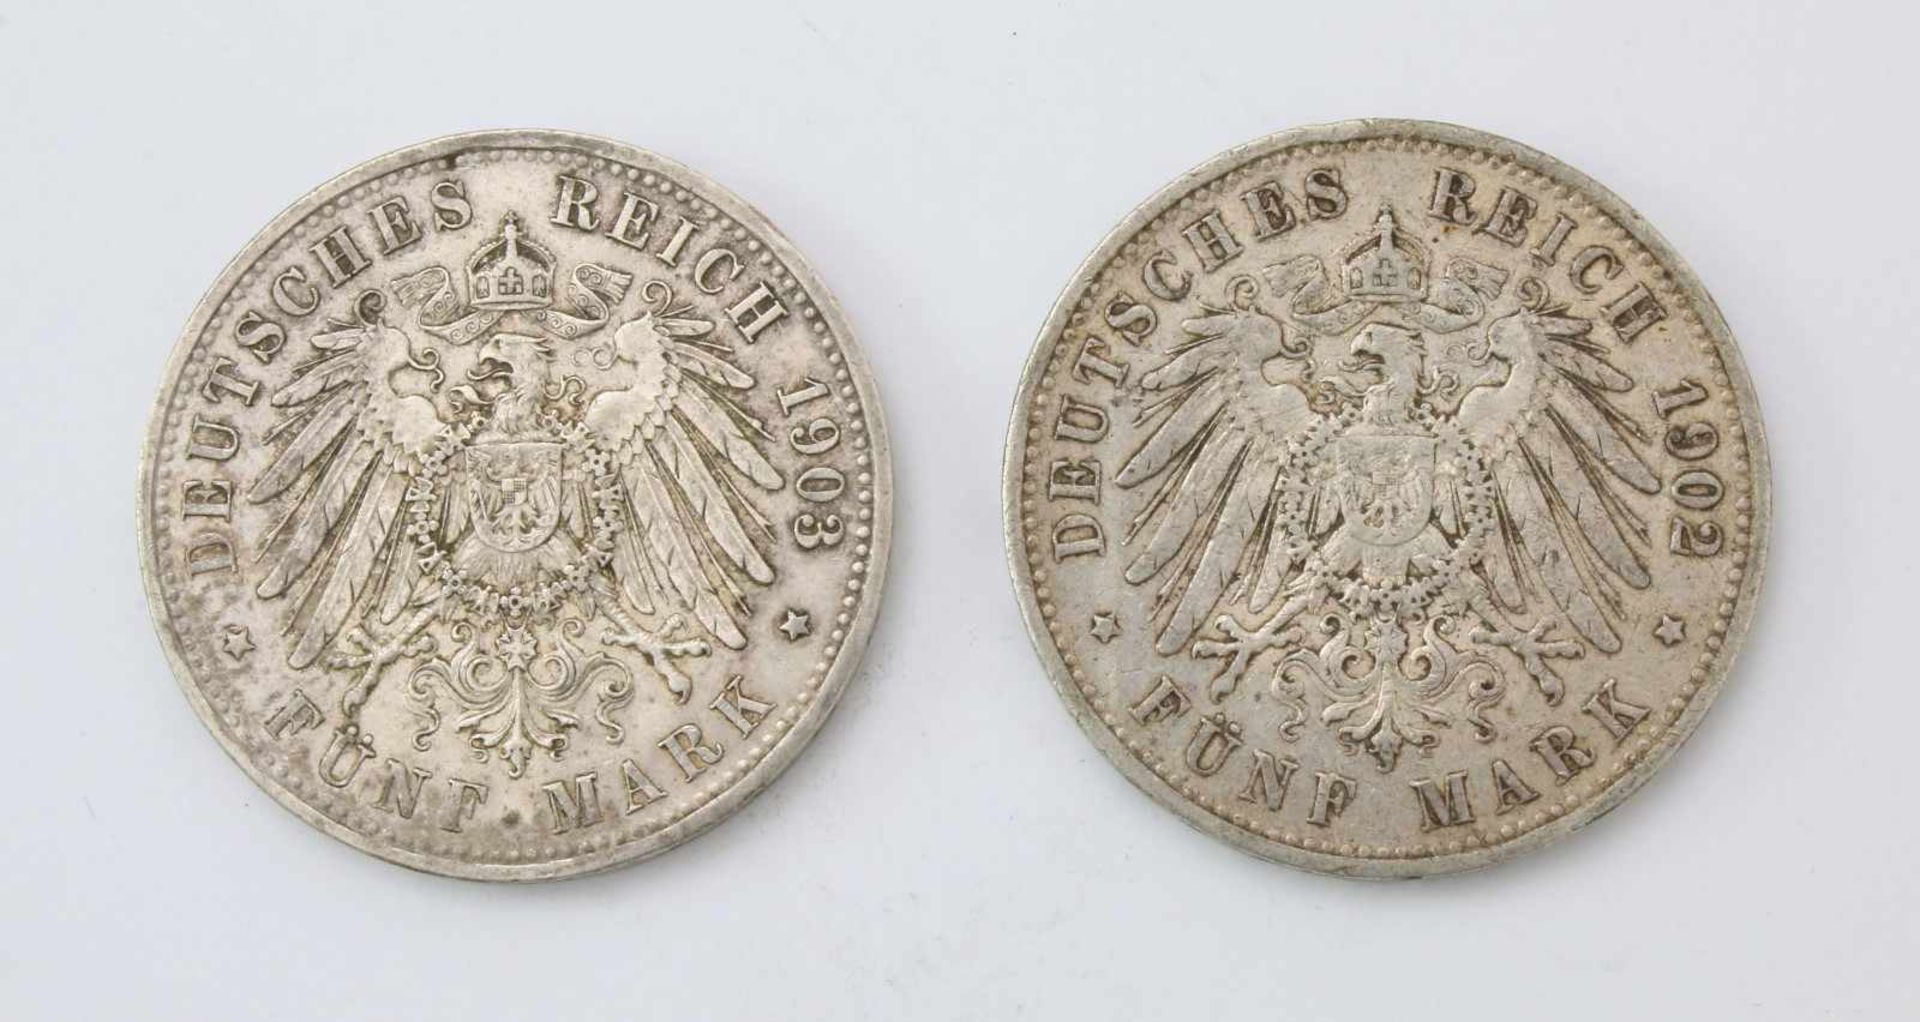 2x 5 Mark - Kaiserreich SilberWilhelm II. 1902 und Otto v. Bayern 1903. - Bild 2 aus 2